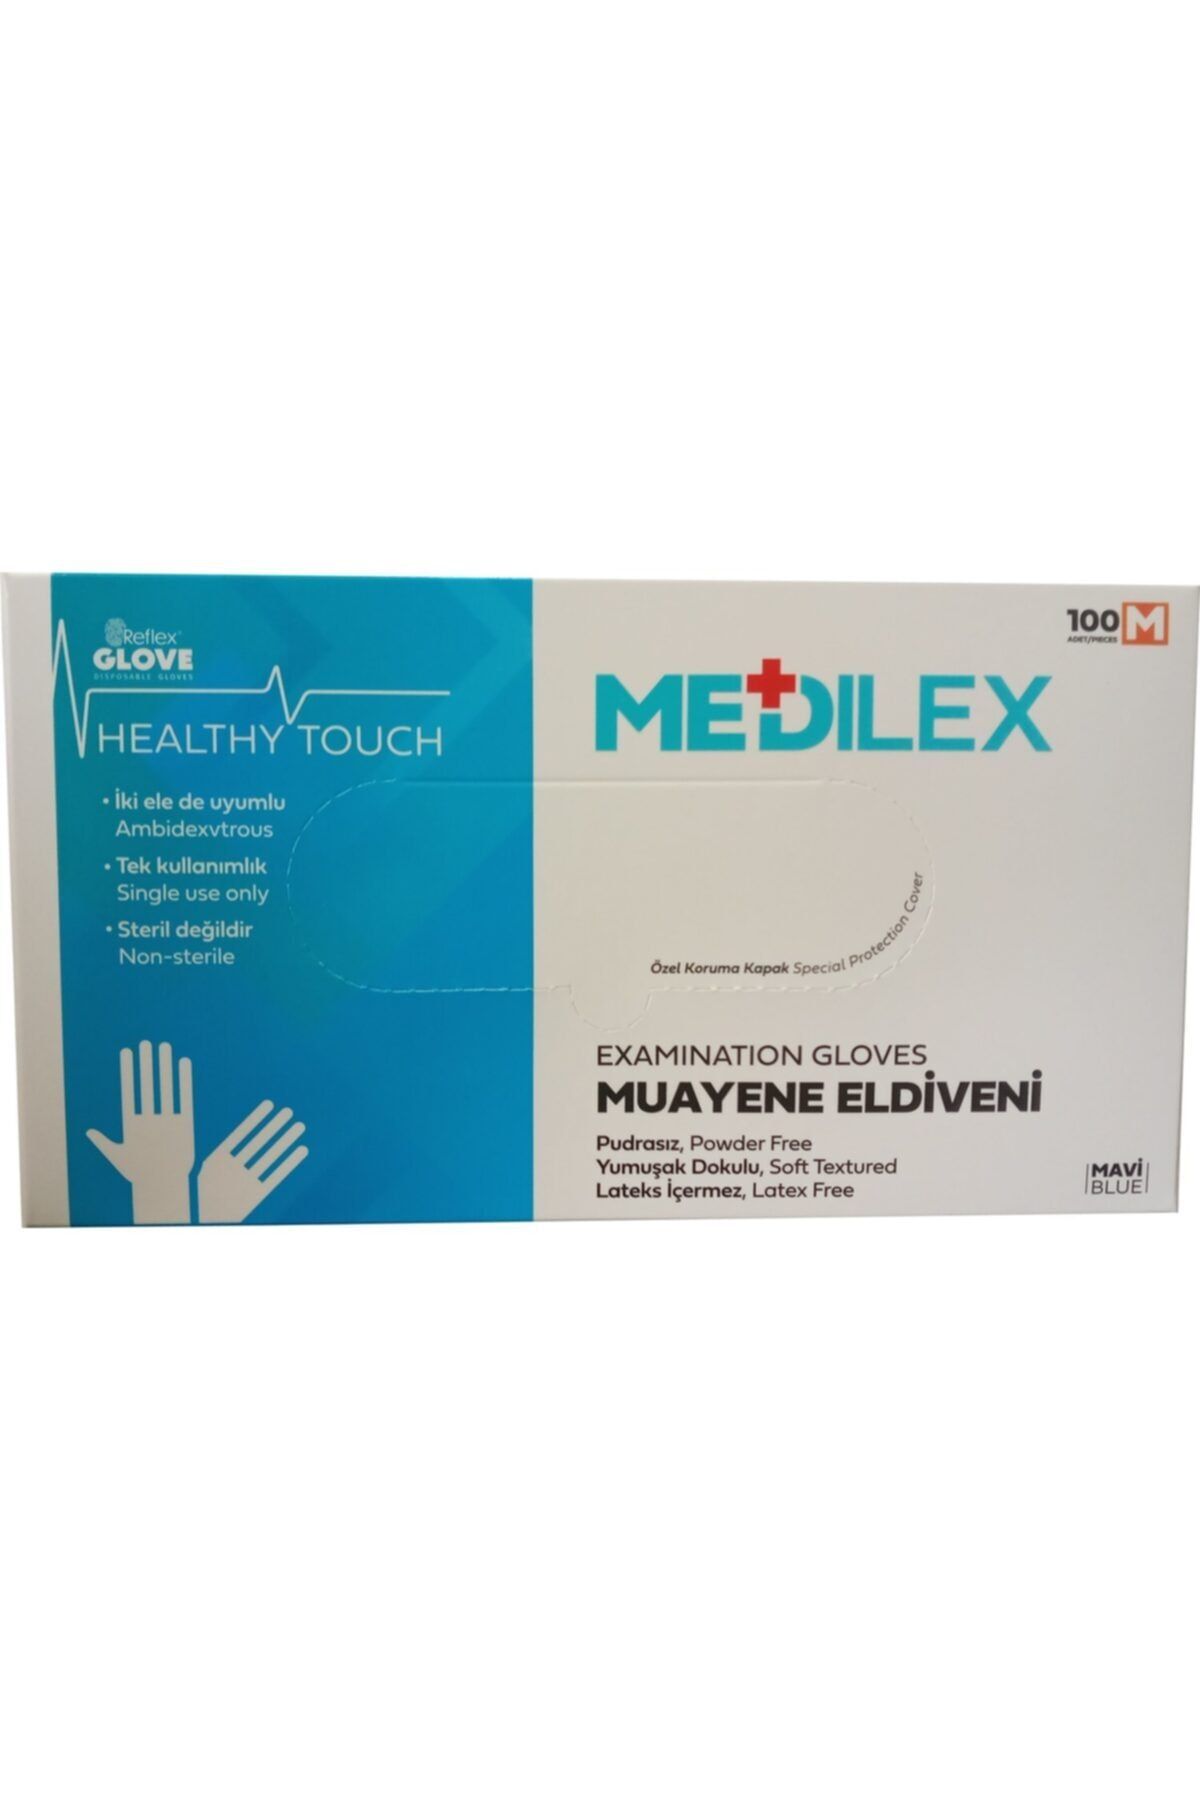 Reflex Medilex Glove Pudrasız 100 Lü Mavi / M Beden